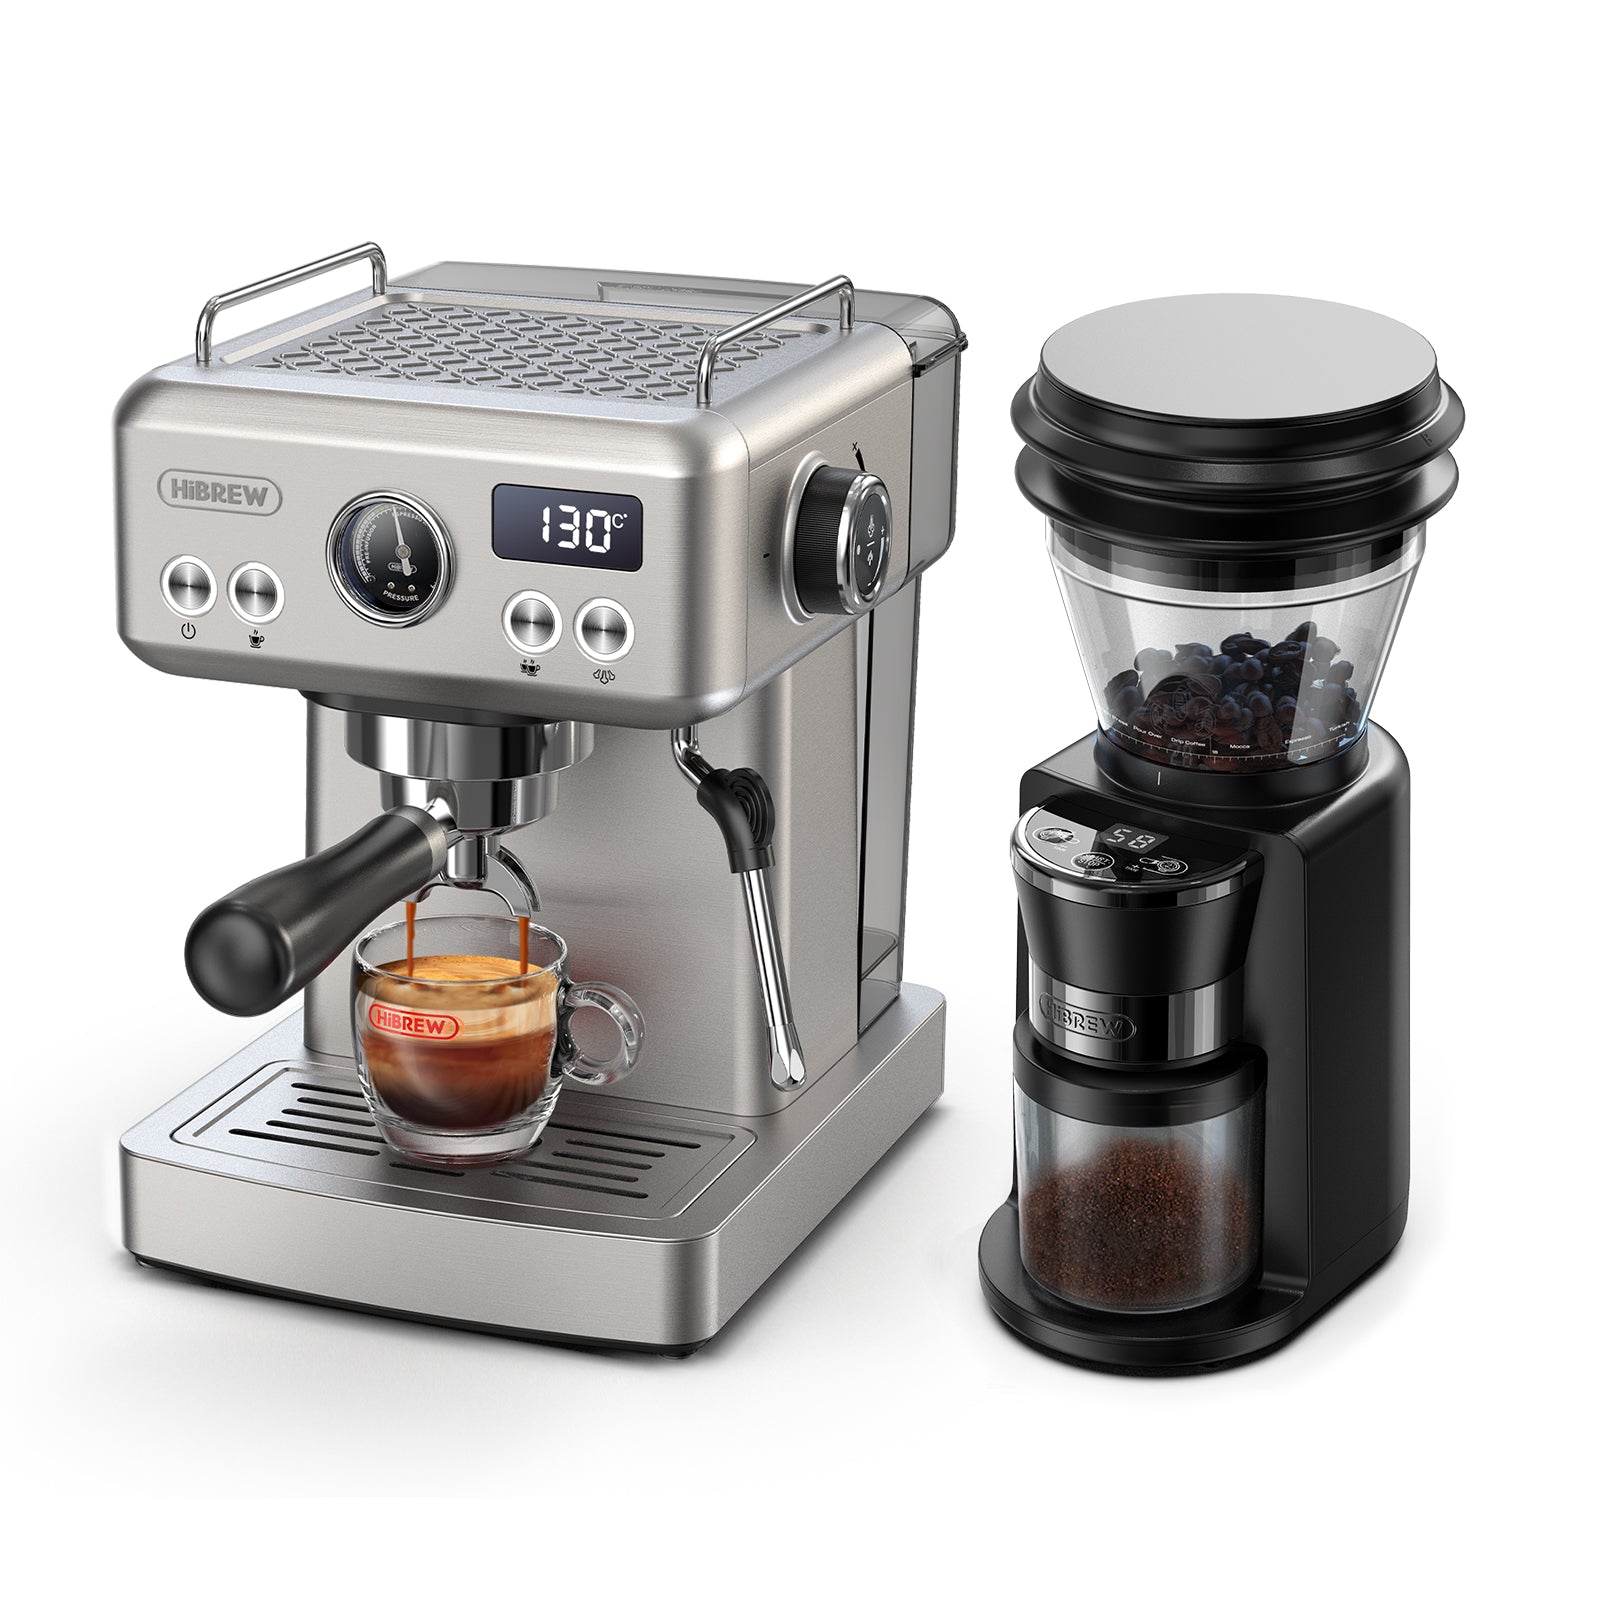 HiBREW Barista Pro 19Bar Bean Grinder Steamer Espresso Coffee